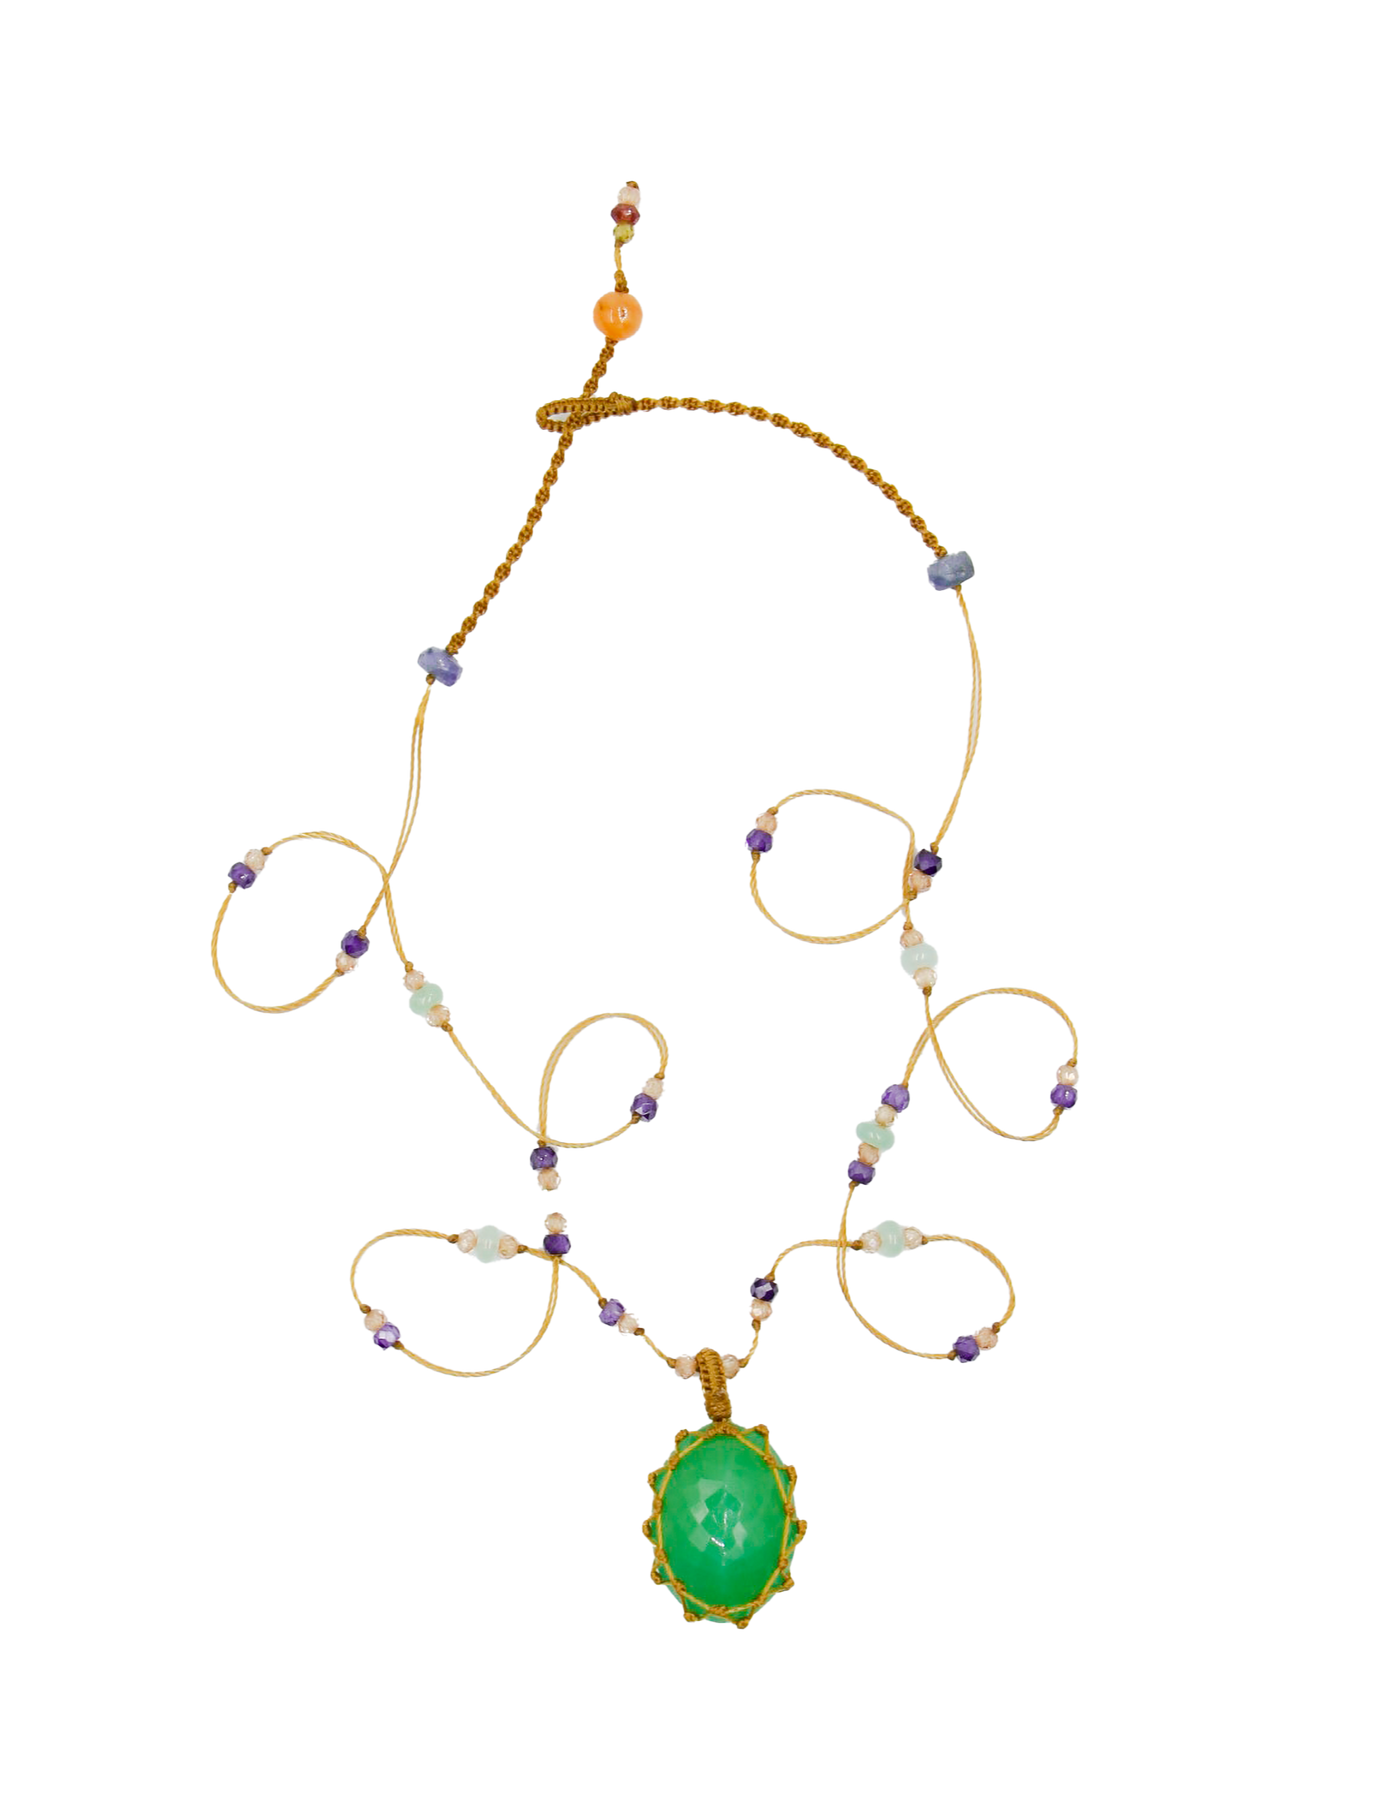 Tibetan Short Necklace - Chrysoprase - Emerald Mix - Beige Thread